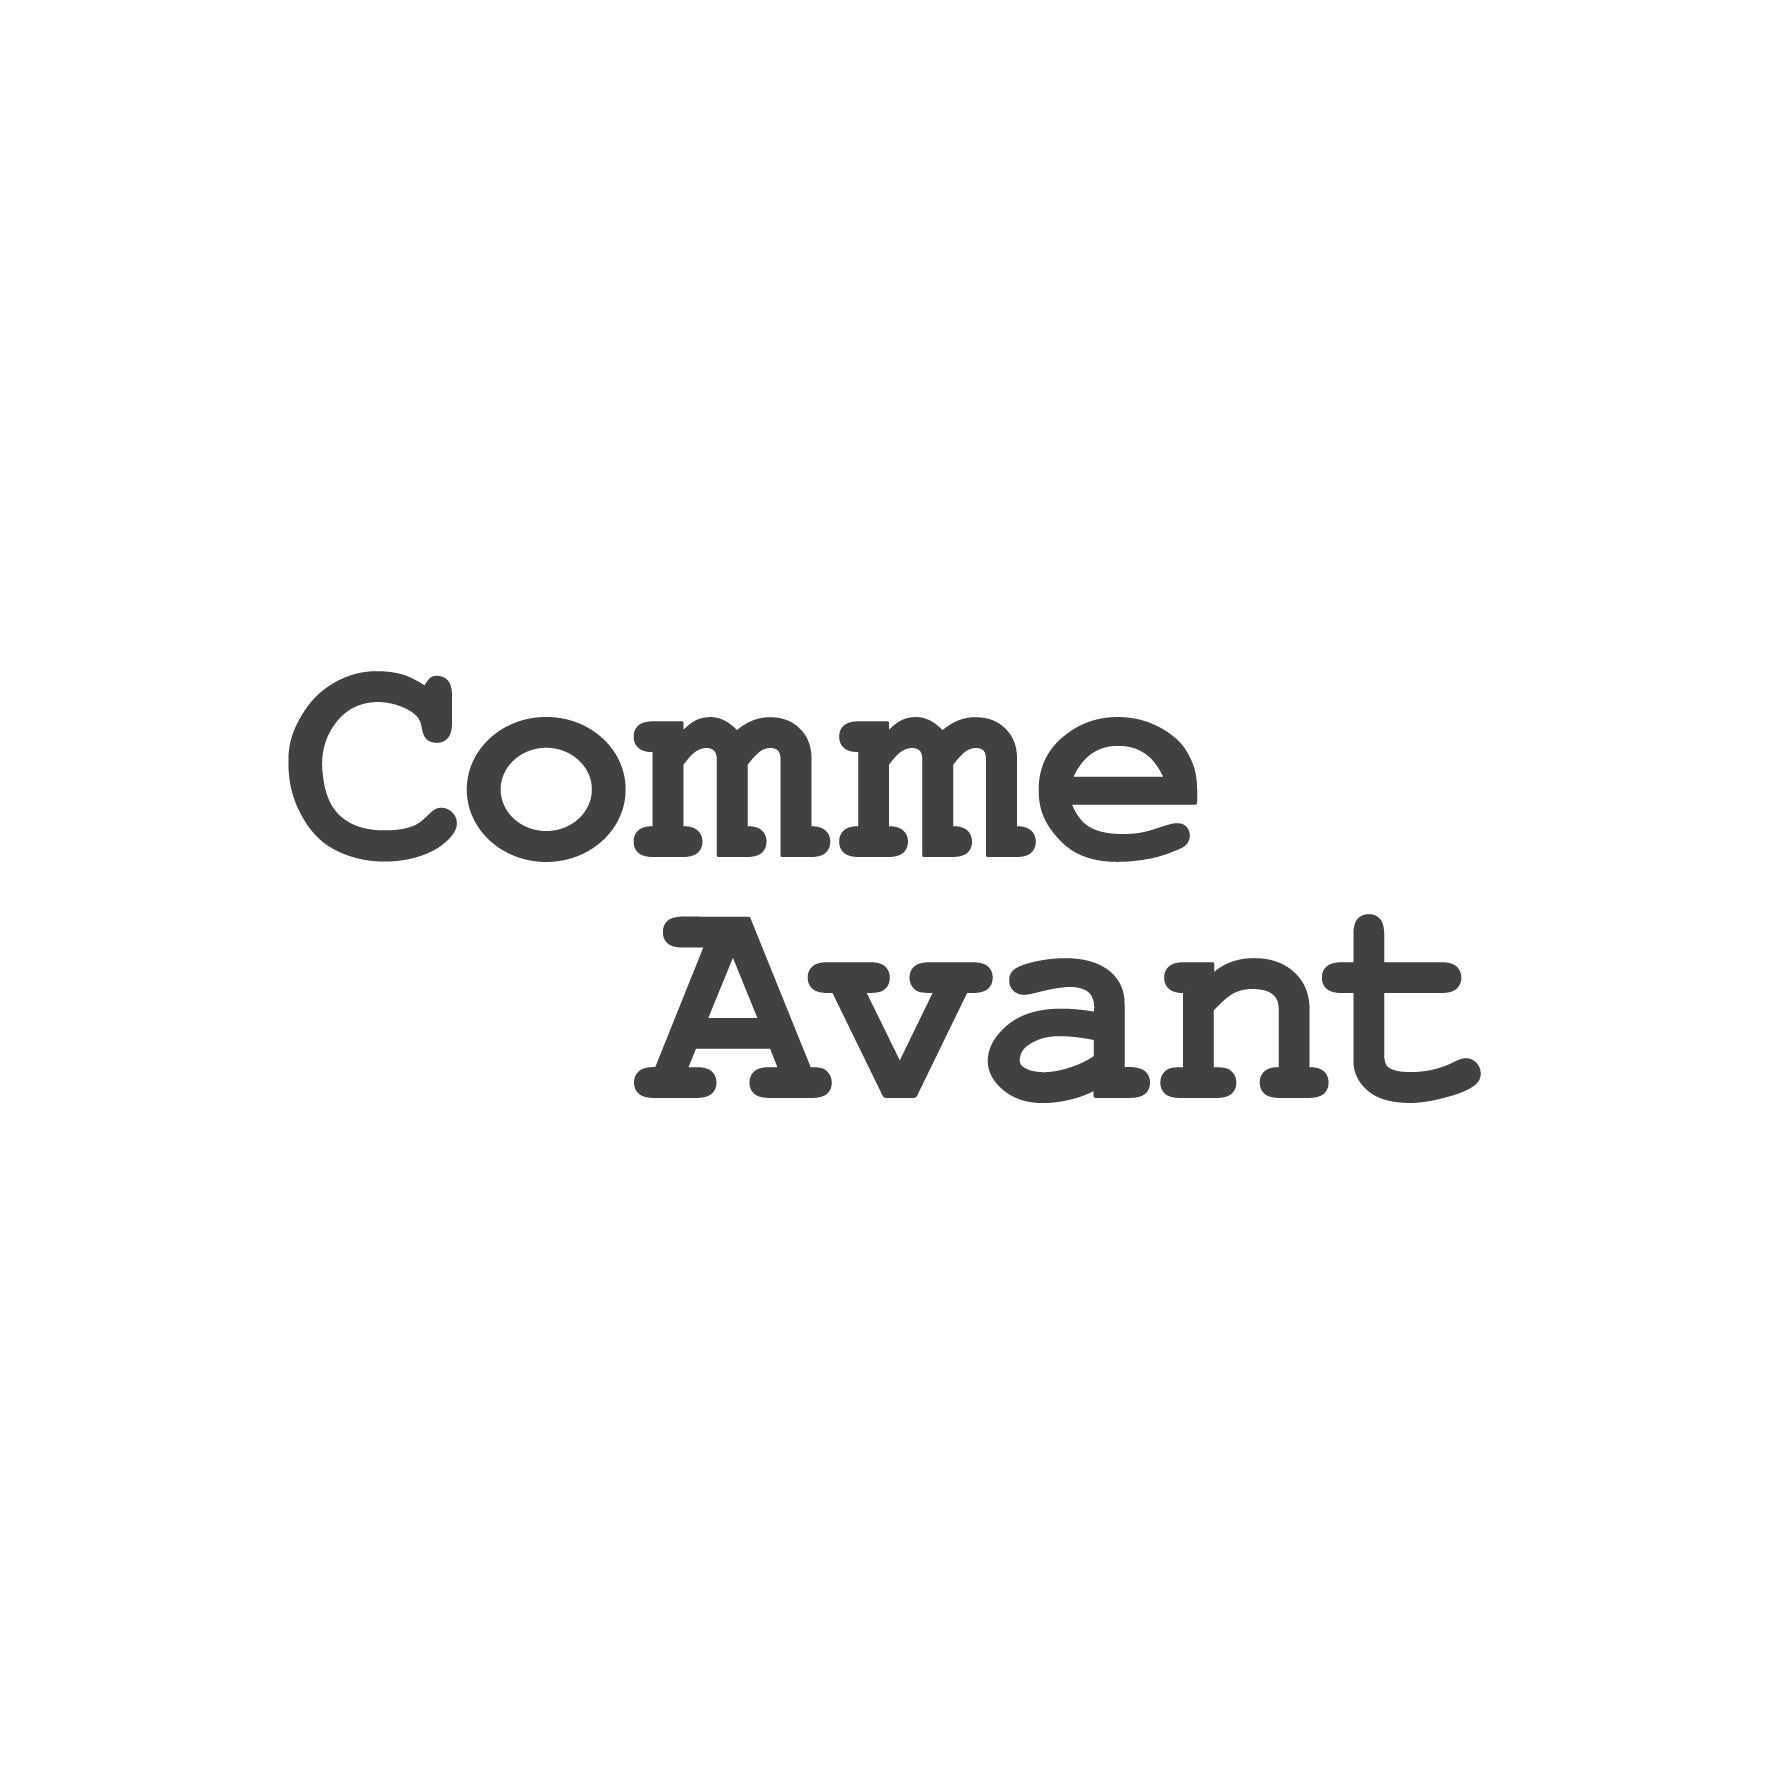 Comme Avant ᐅ Cosmétiques & Vêtements responsables bio made in France